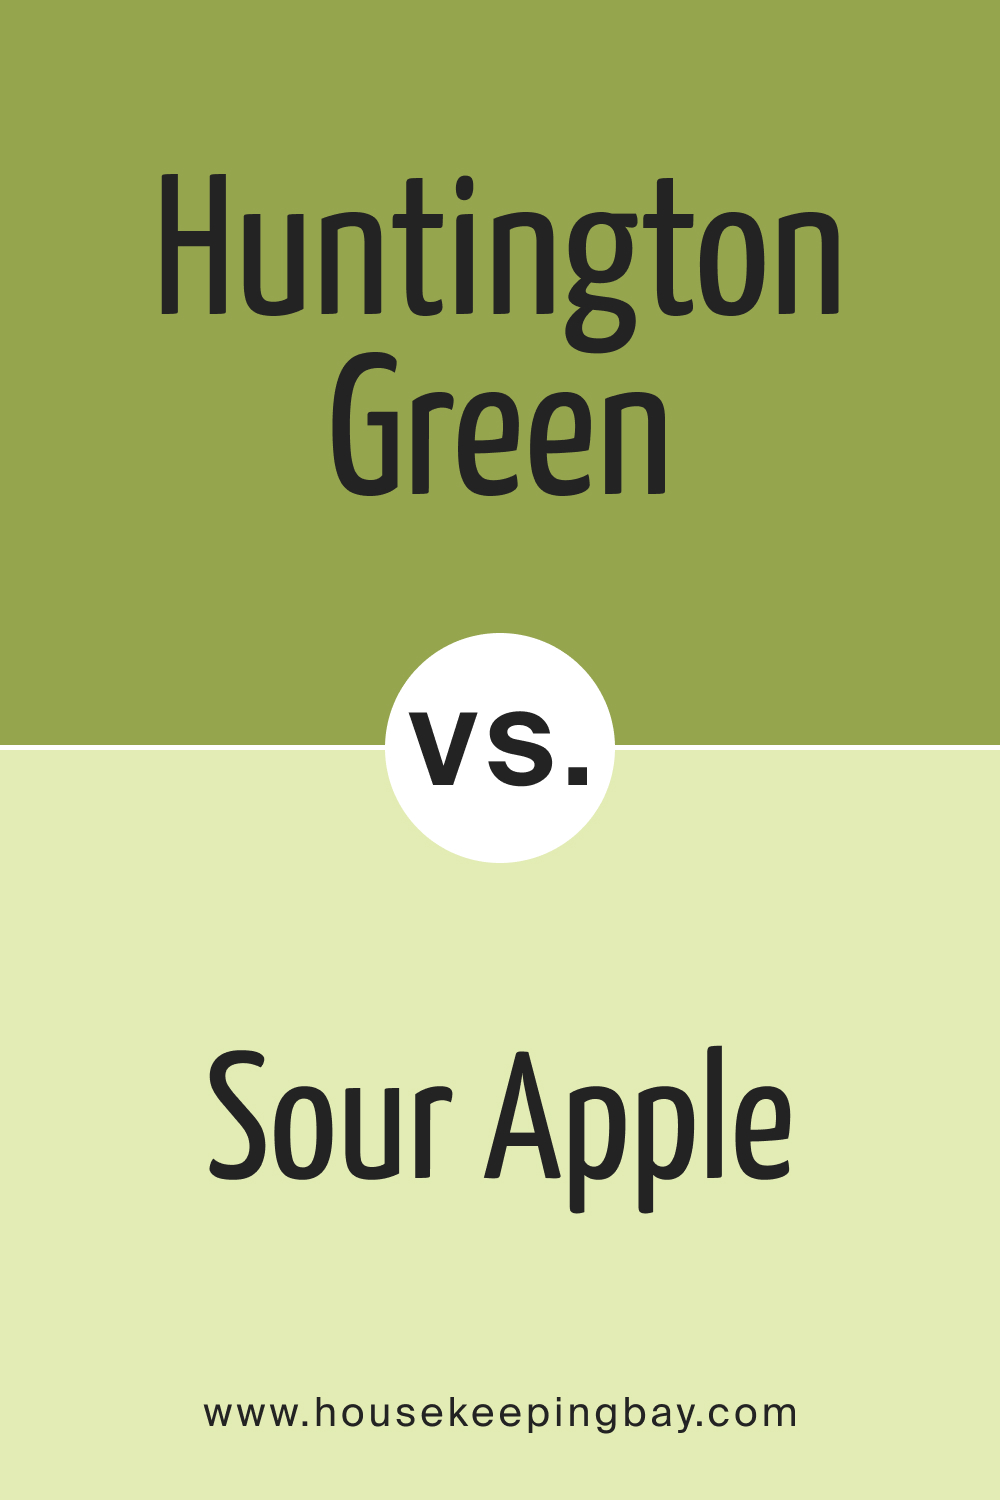 Huntington Green 406 vs. BM 401 Sour Apple